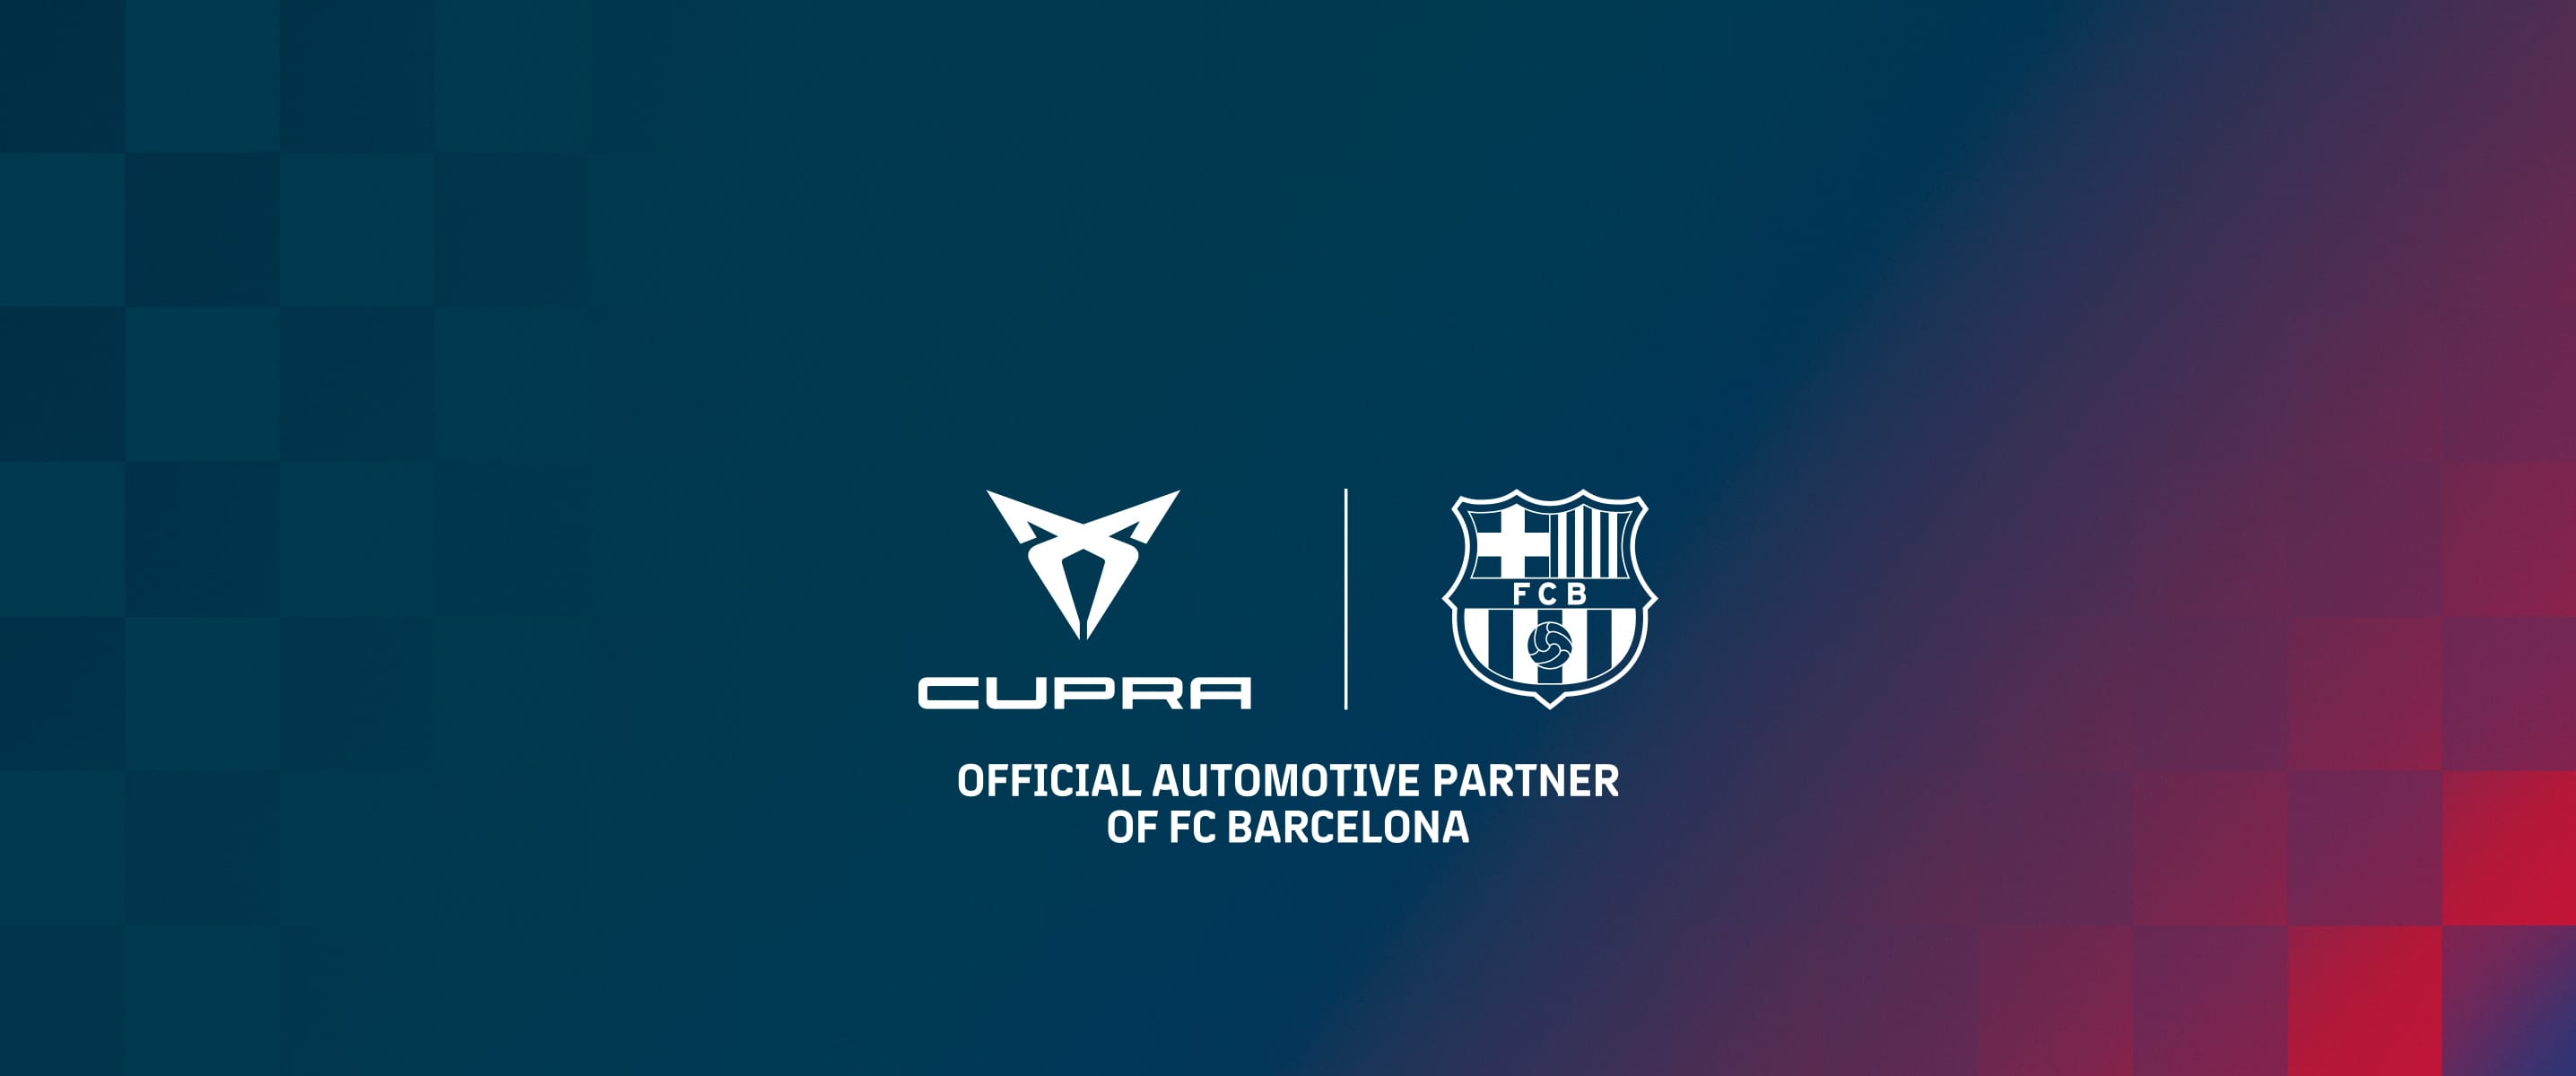 CUPRA ja FC Barcelona yhteistyössä